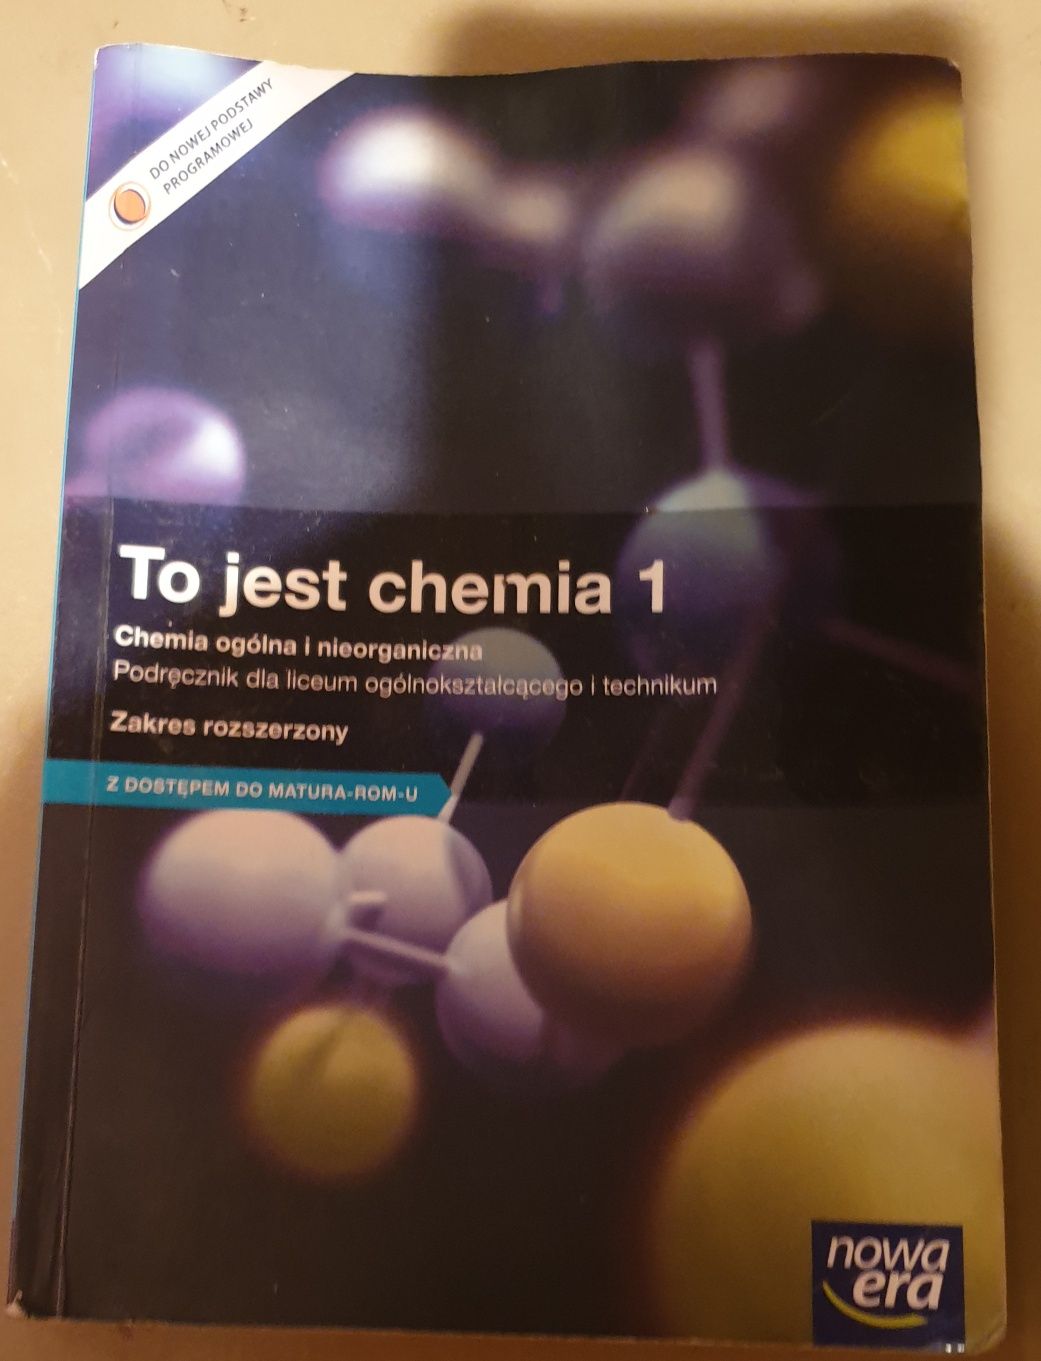 Podręcznik - "To jest chemia 1"